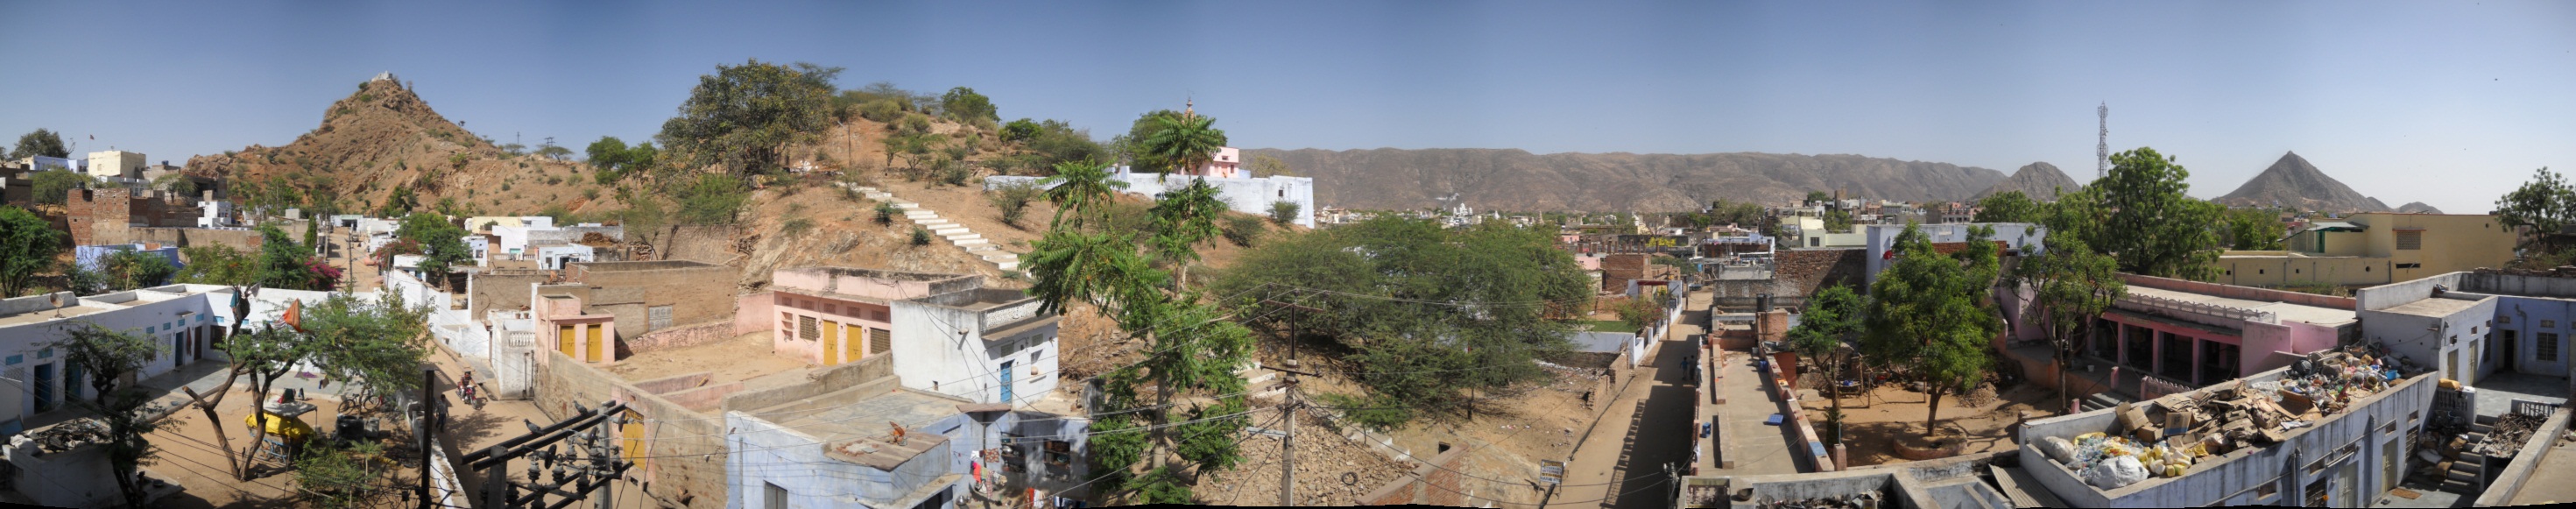 Panorama Valley Pushkar hotelview